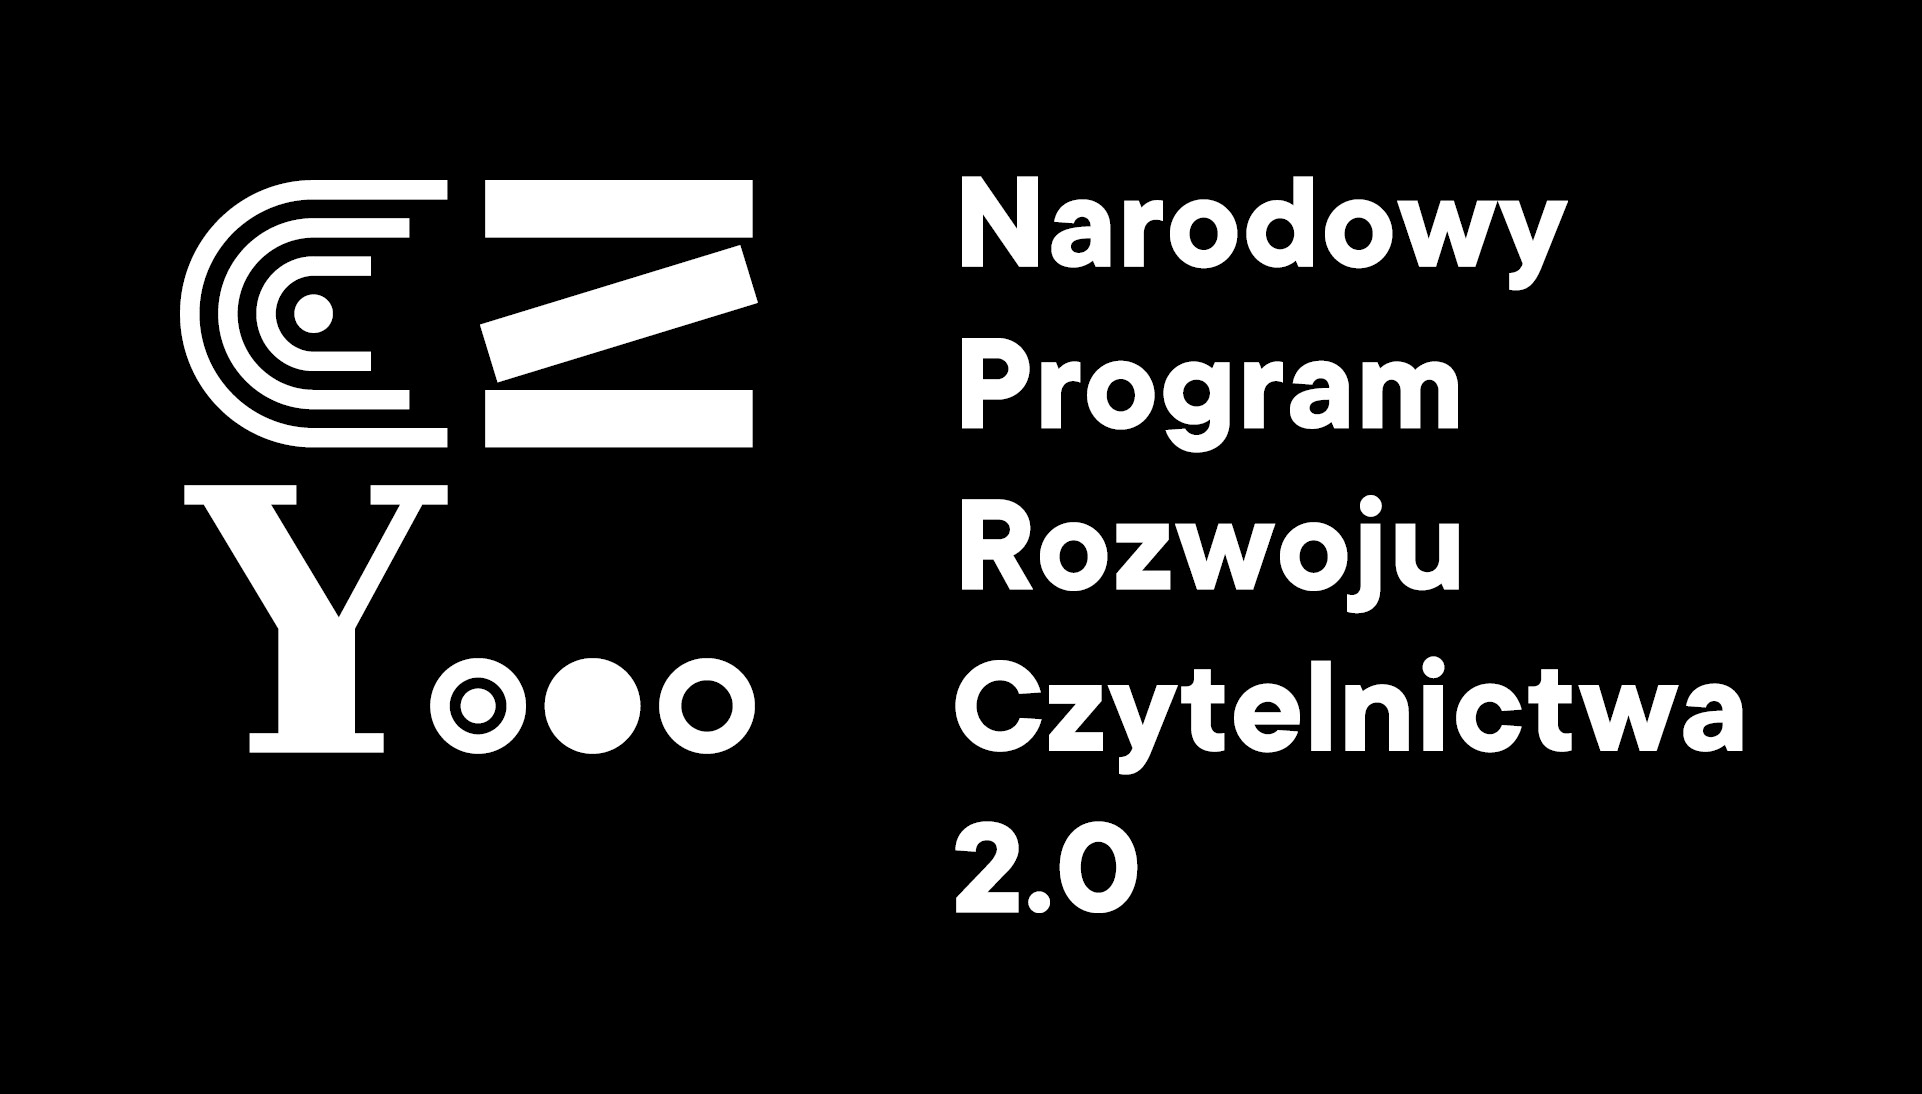 Logotyp Narodowy Program Rozwoju Czytelnictwa